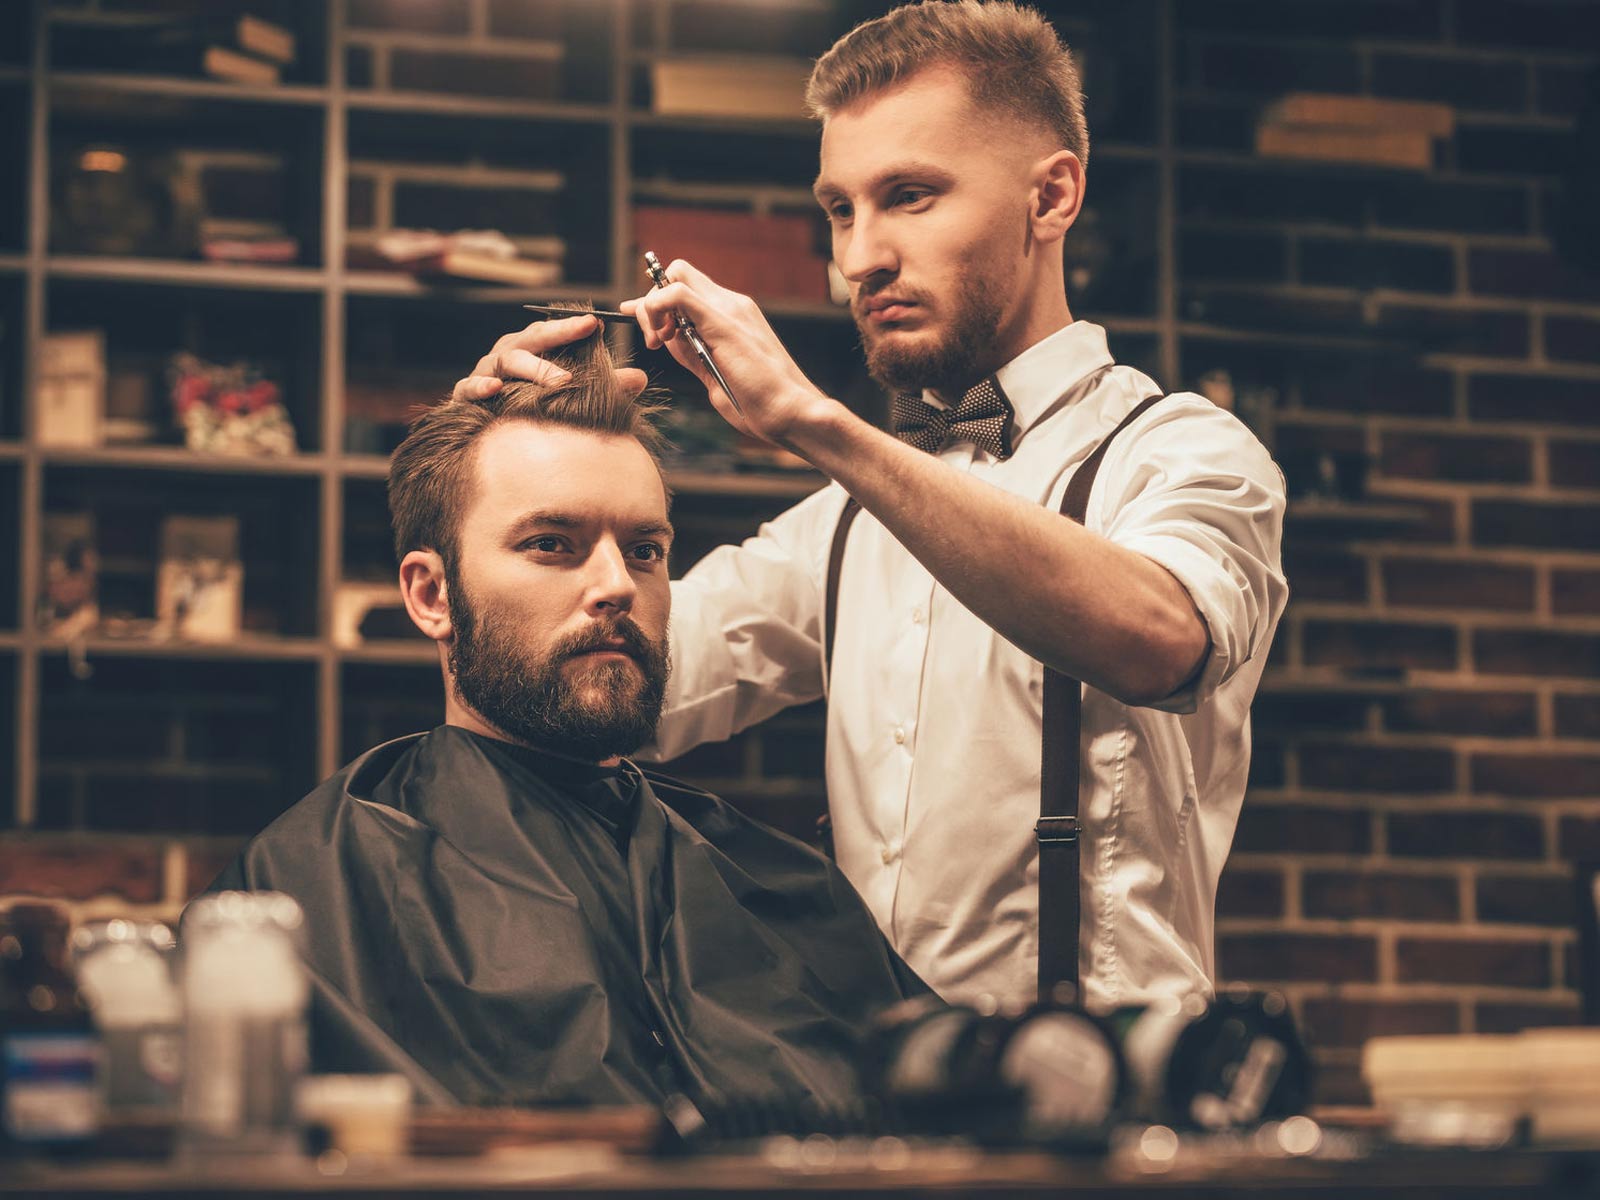 Haircut Styles – Gentlemens Grooming